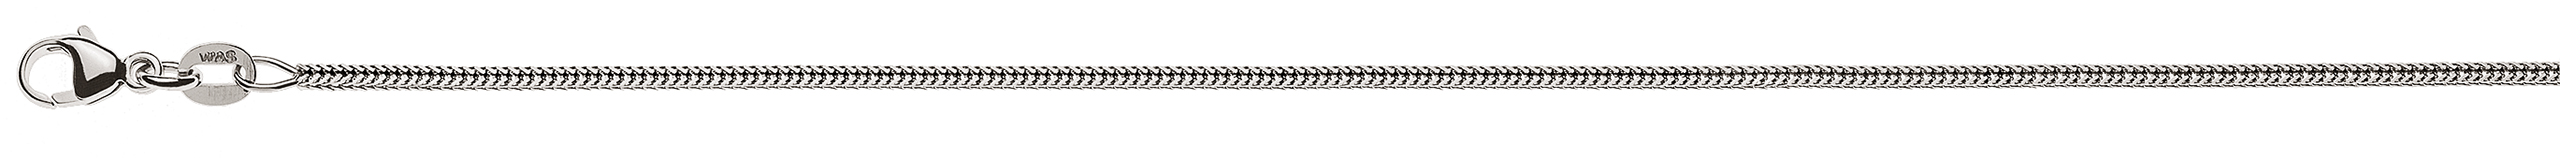 AURONOS Prestige Halskette Weissgold 18K Fuchsschwanz diamantiert 38cm 1.2mm